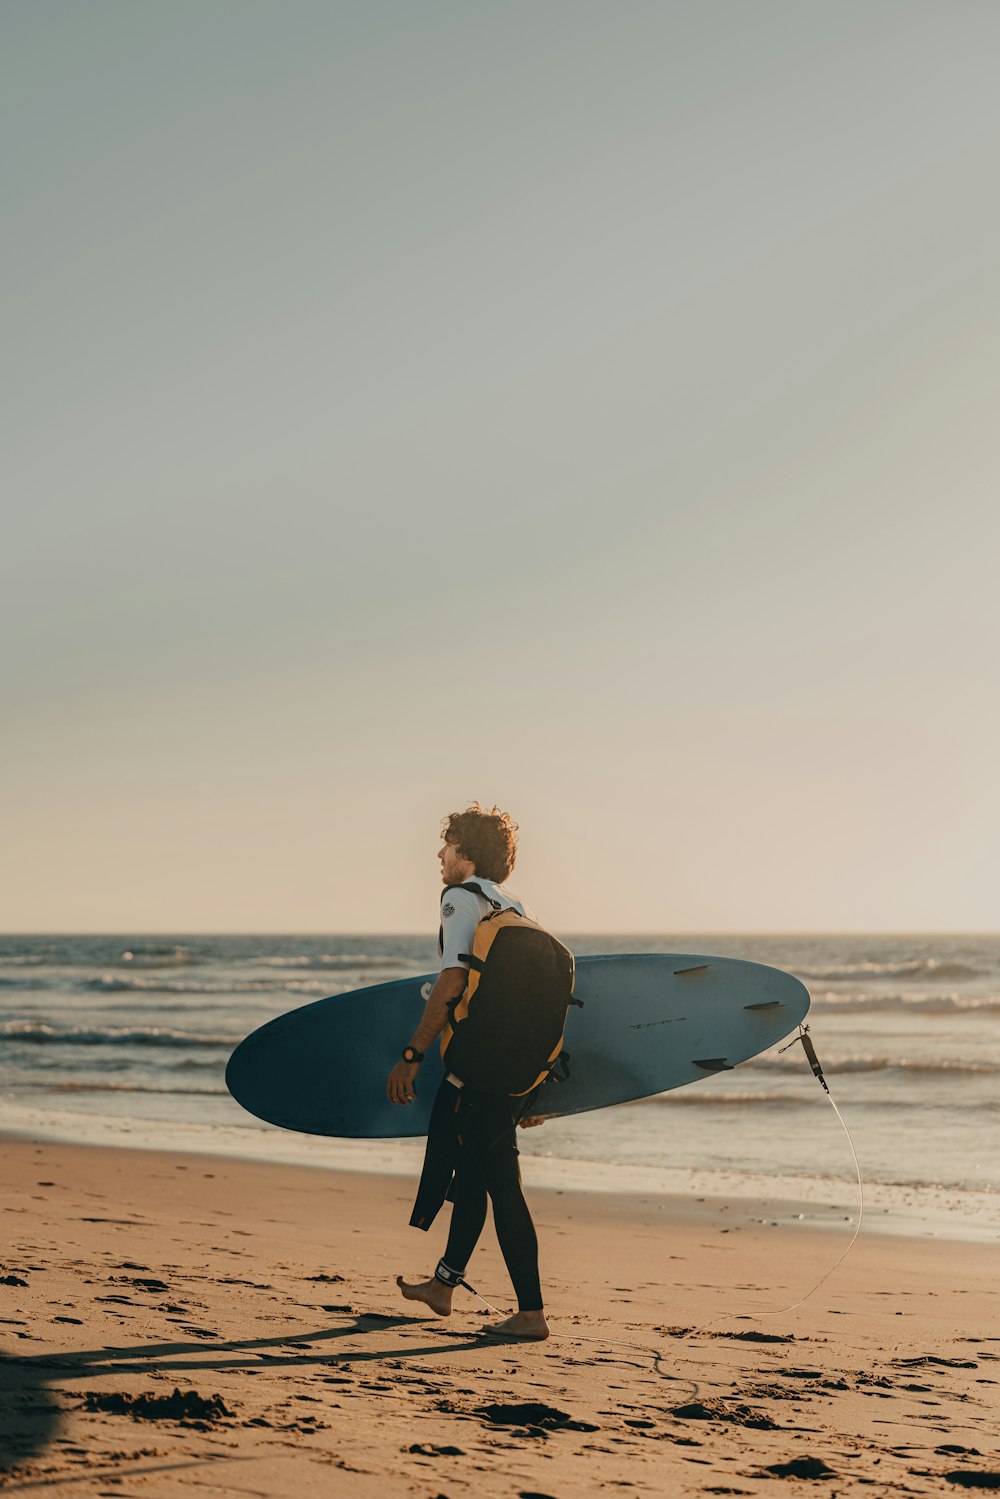 a man carrying a surfboard across a beach